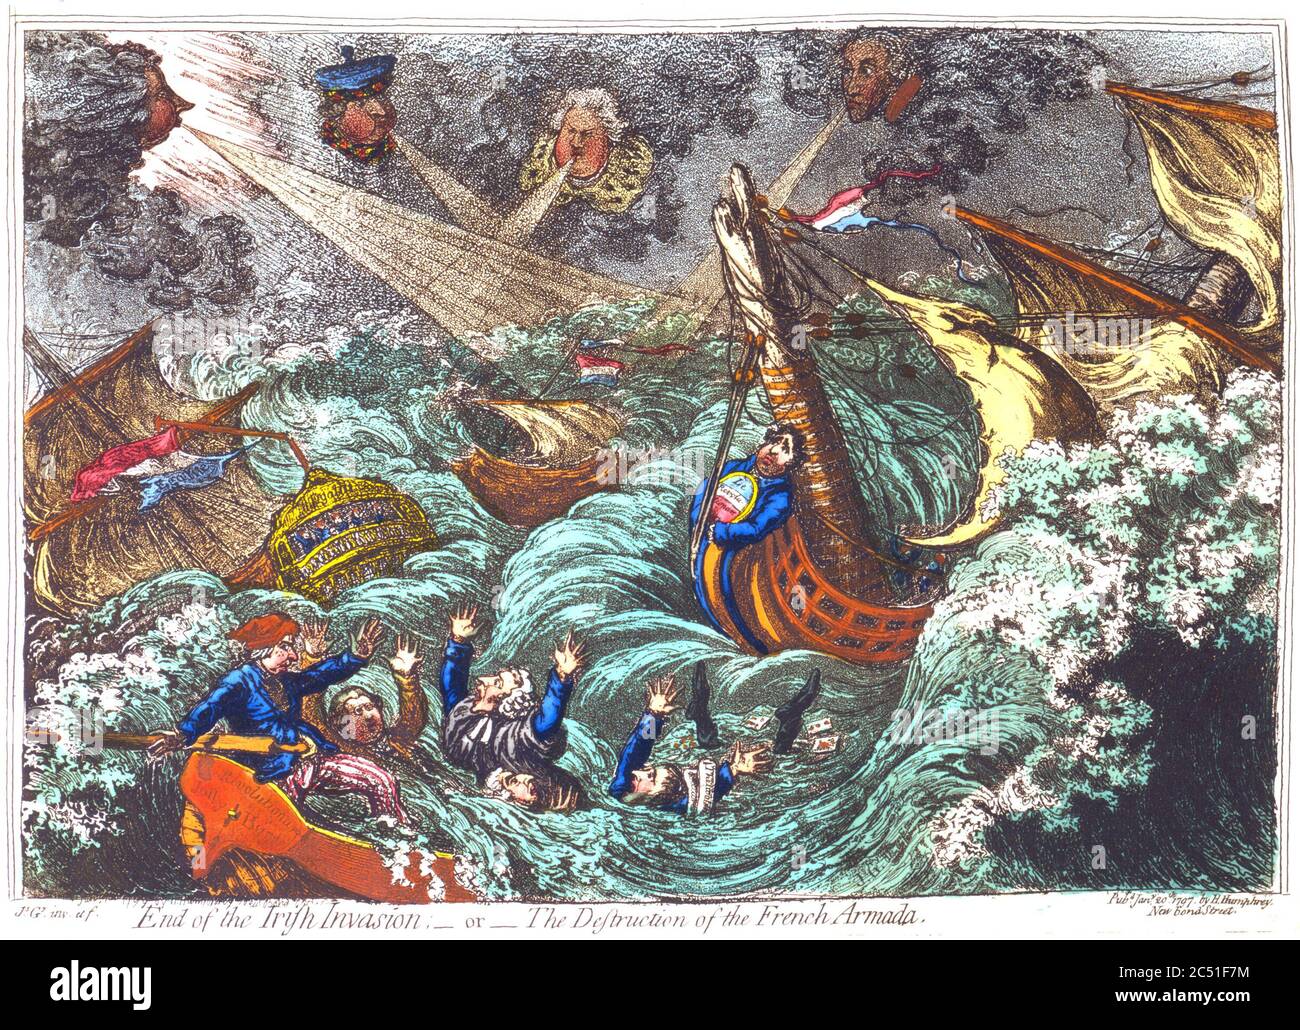 FINE DELL'INVASIONE IRLANDESE o della distruzione dell'Armada francese. Un cartone animato del 1797 di James Gillray che mostra vari politici Foto Stock